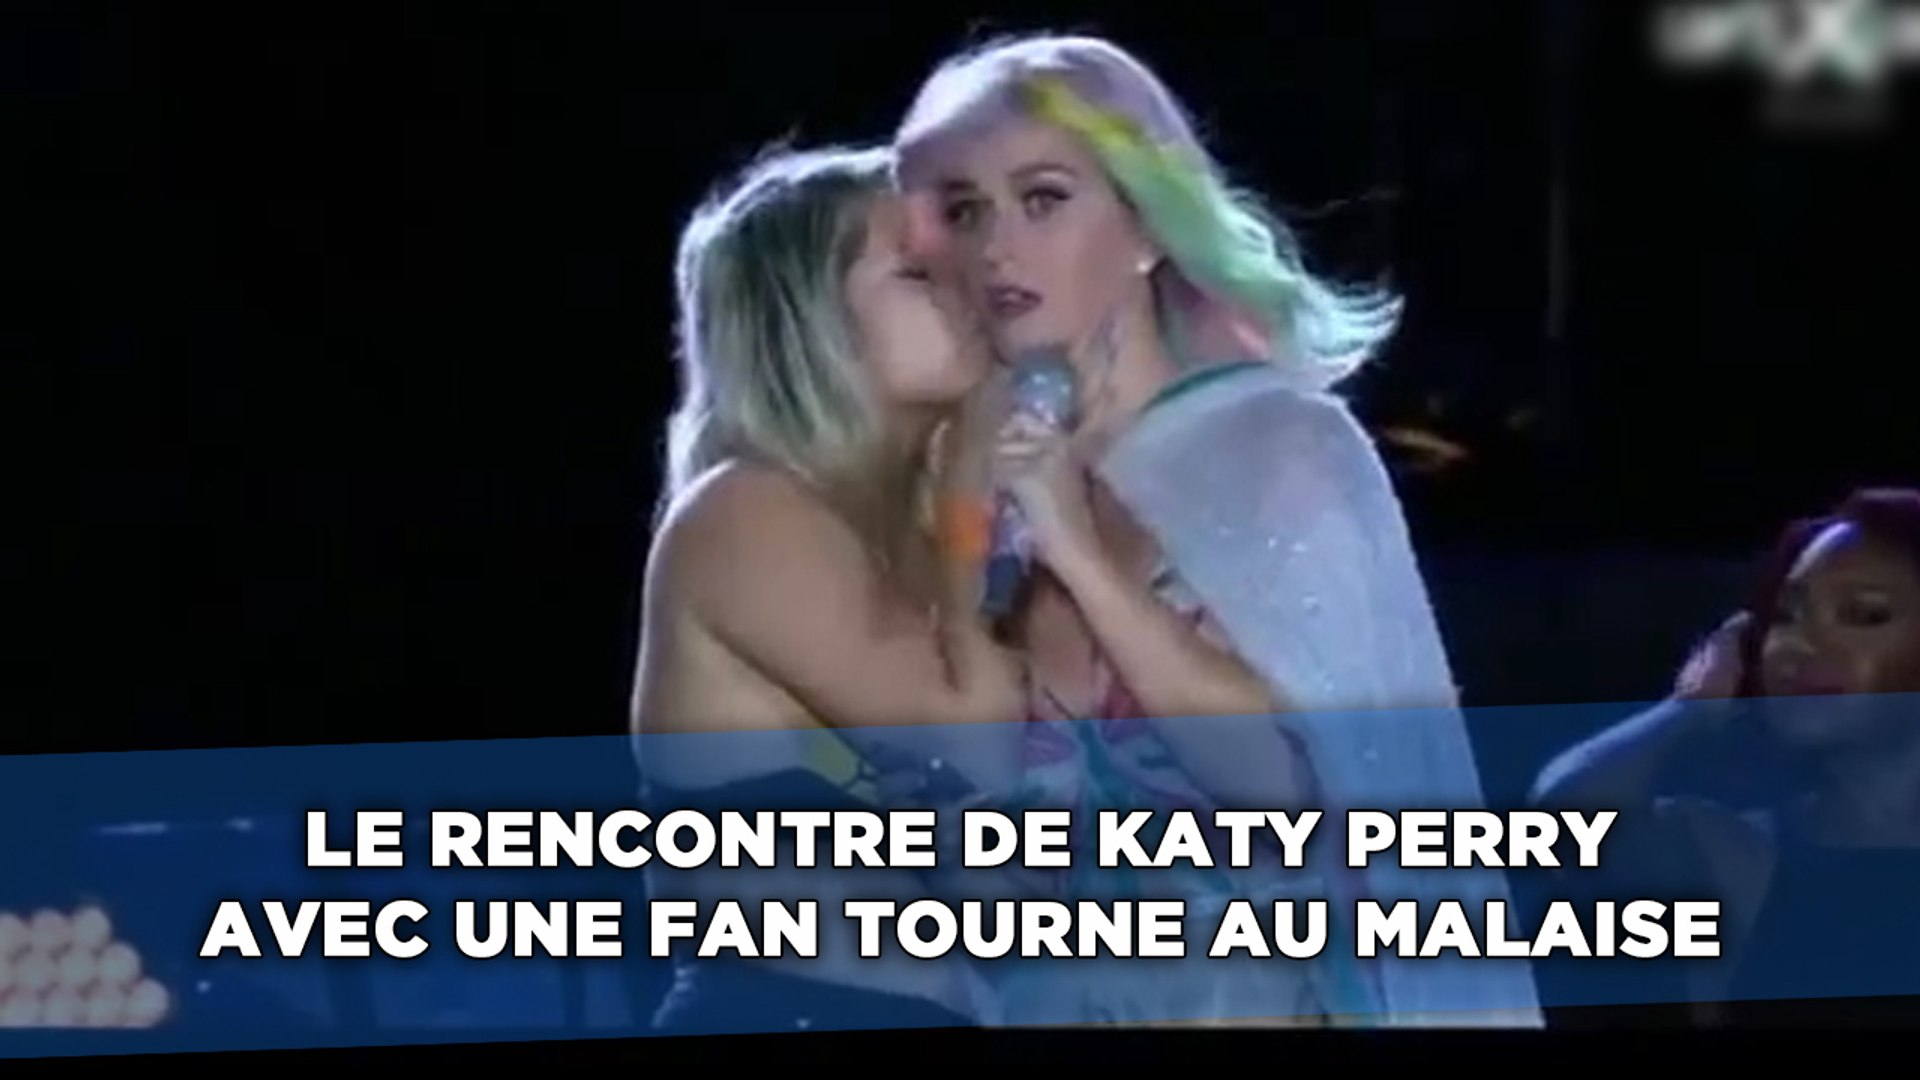 La rencontre de Katy Perry avec une fan tourne au malaise